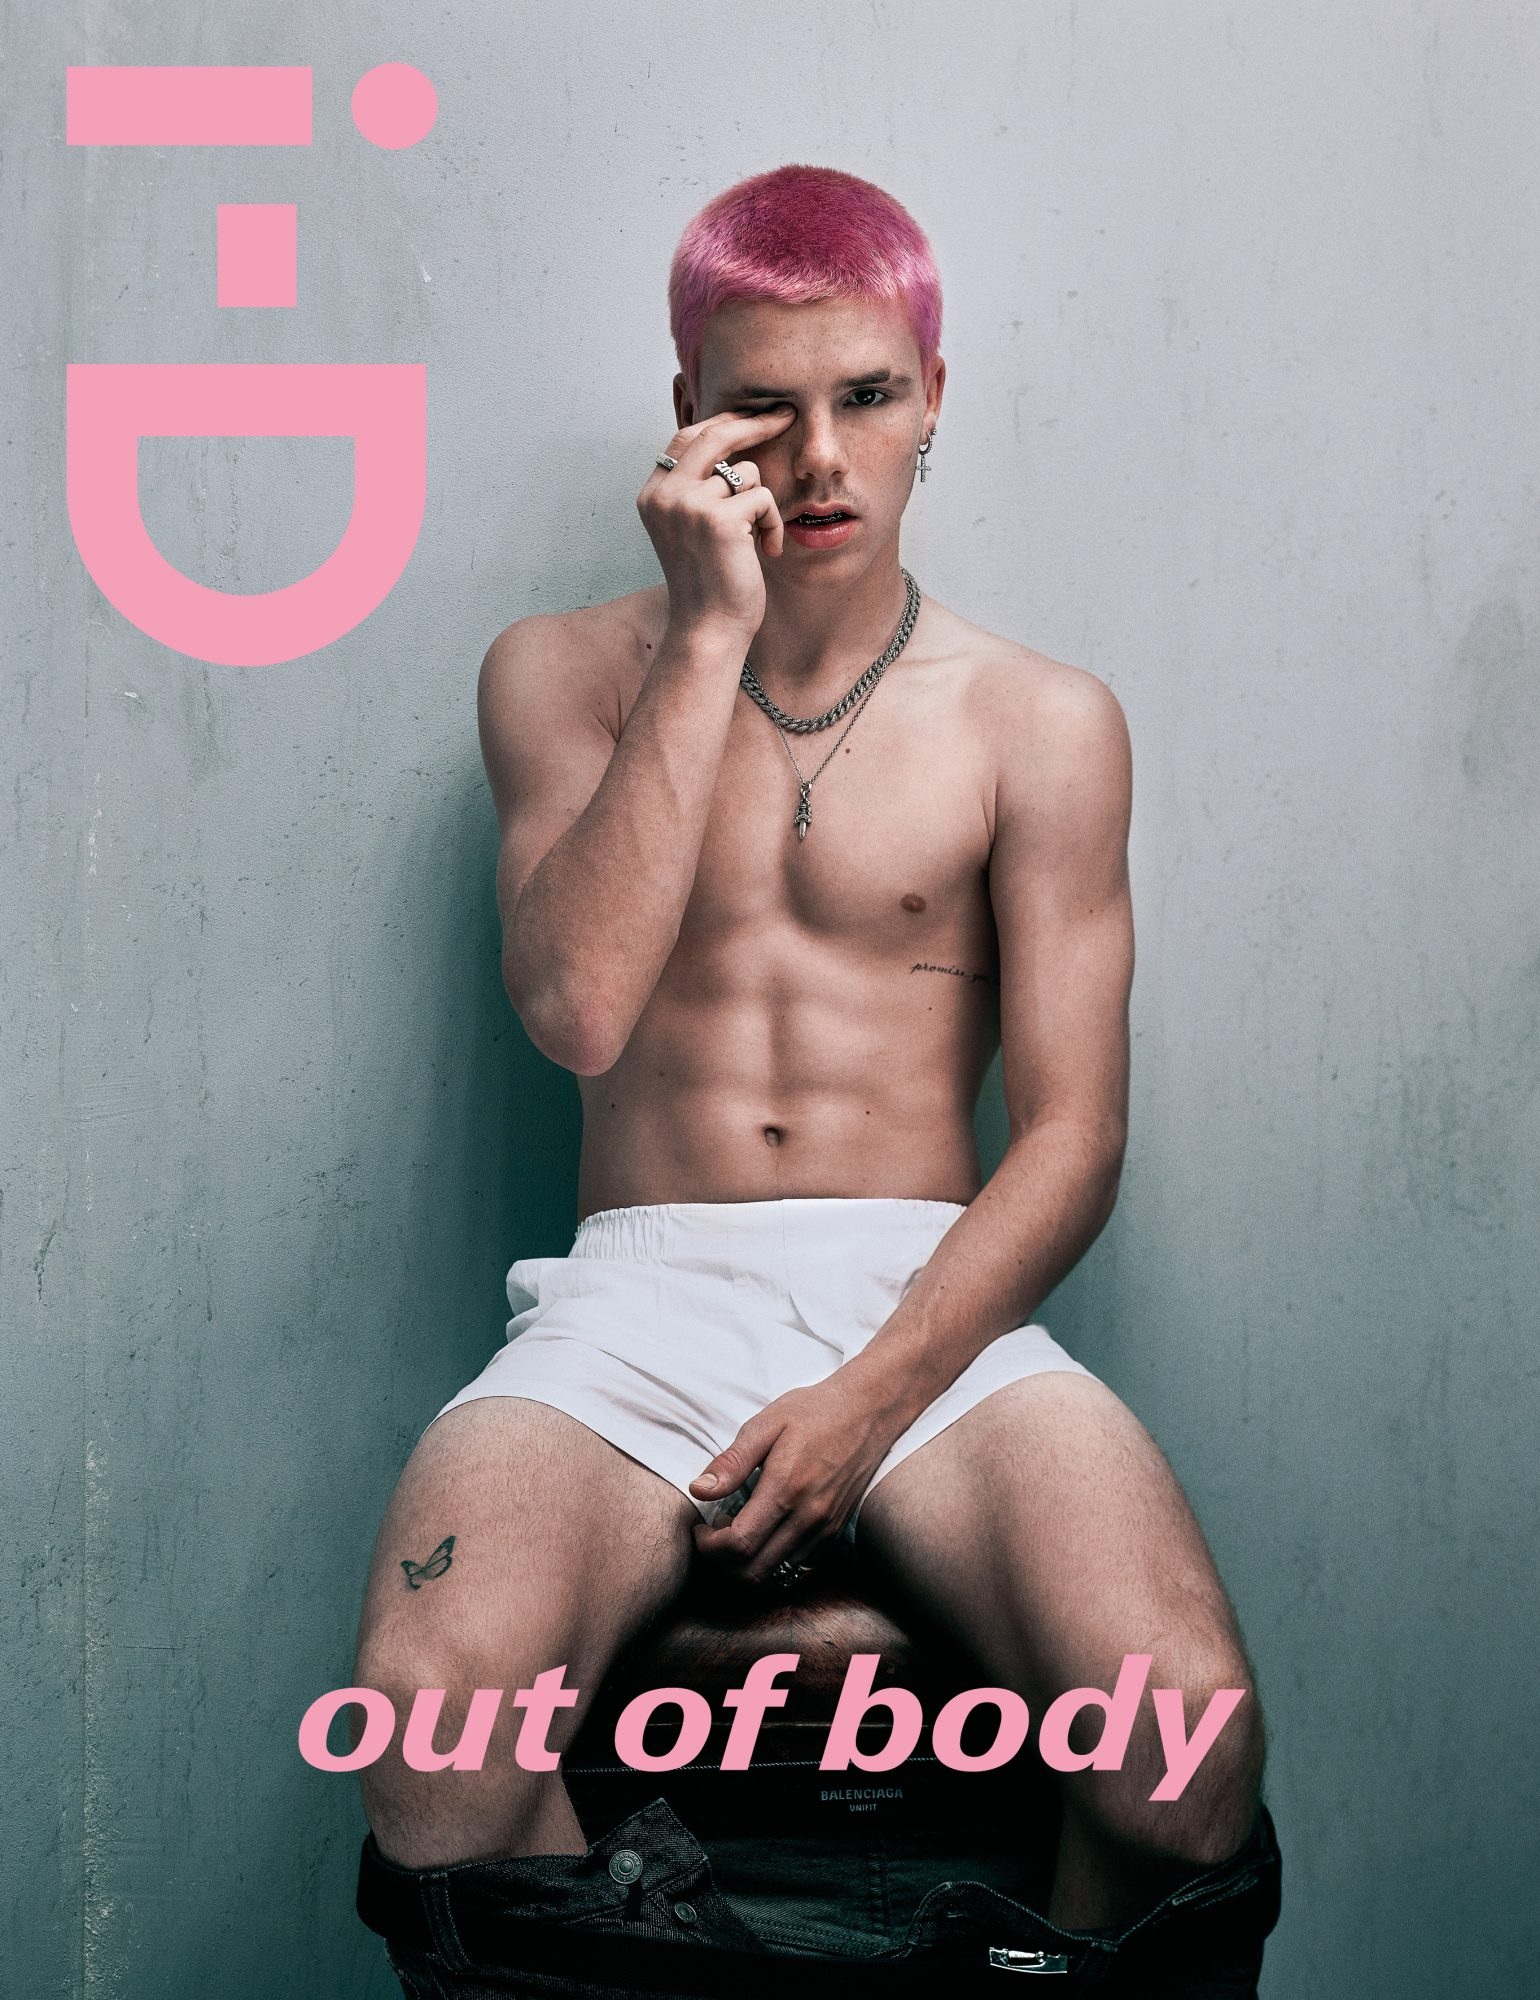 Quý tử 17 tuổi của David Beckham khoe cơ bắp trên bìa tạp chí - 1